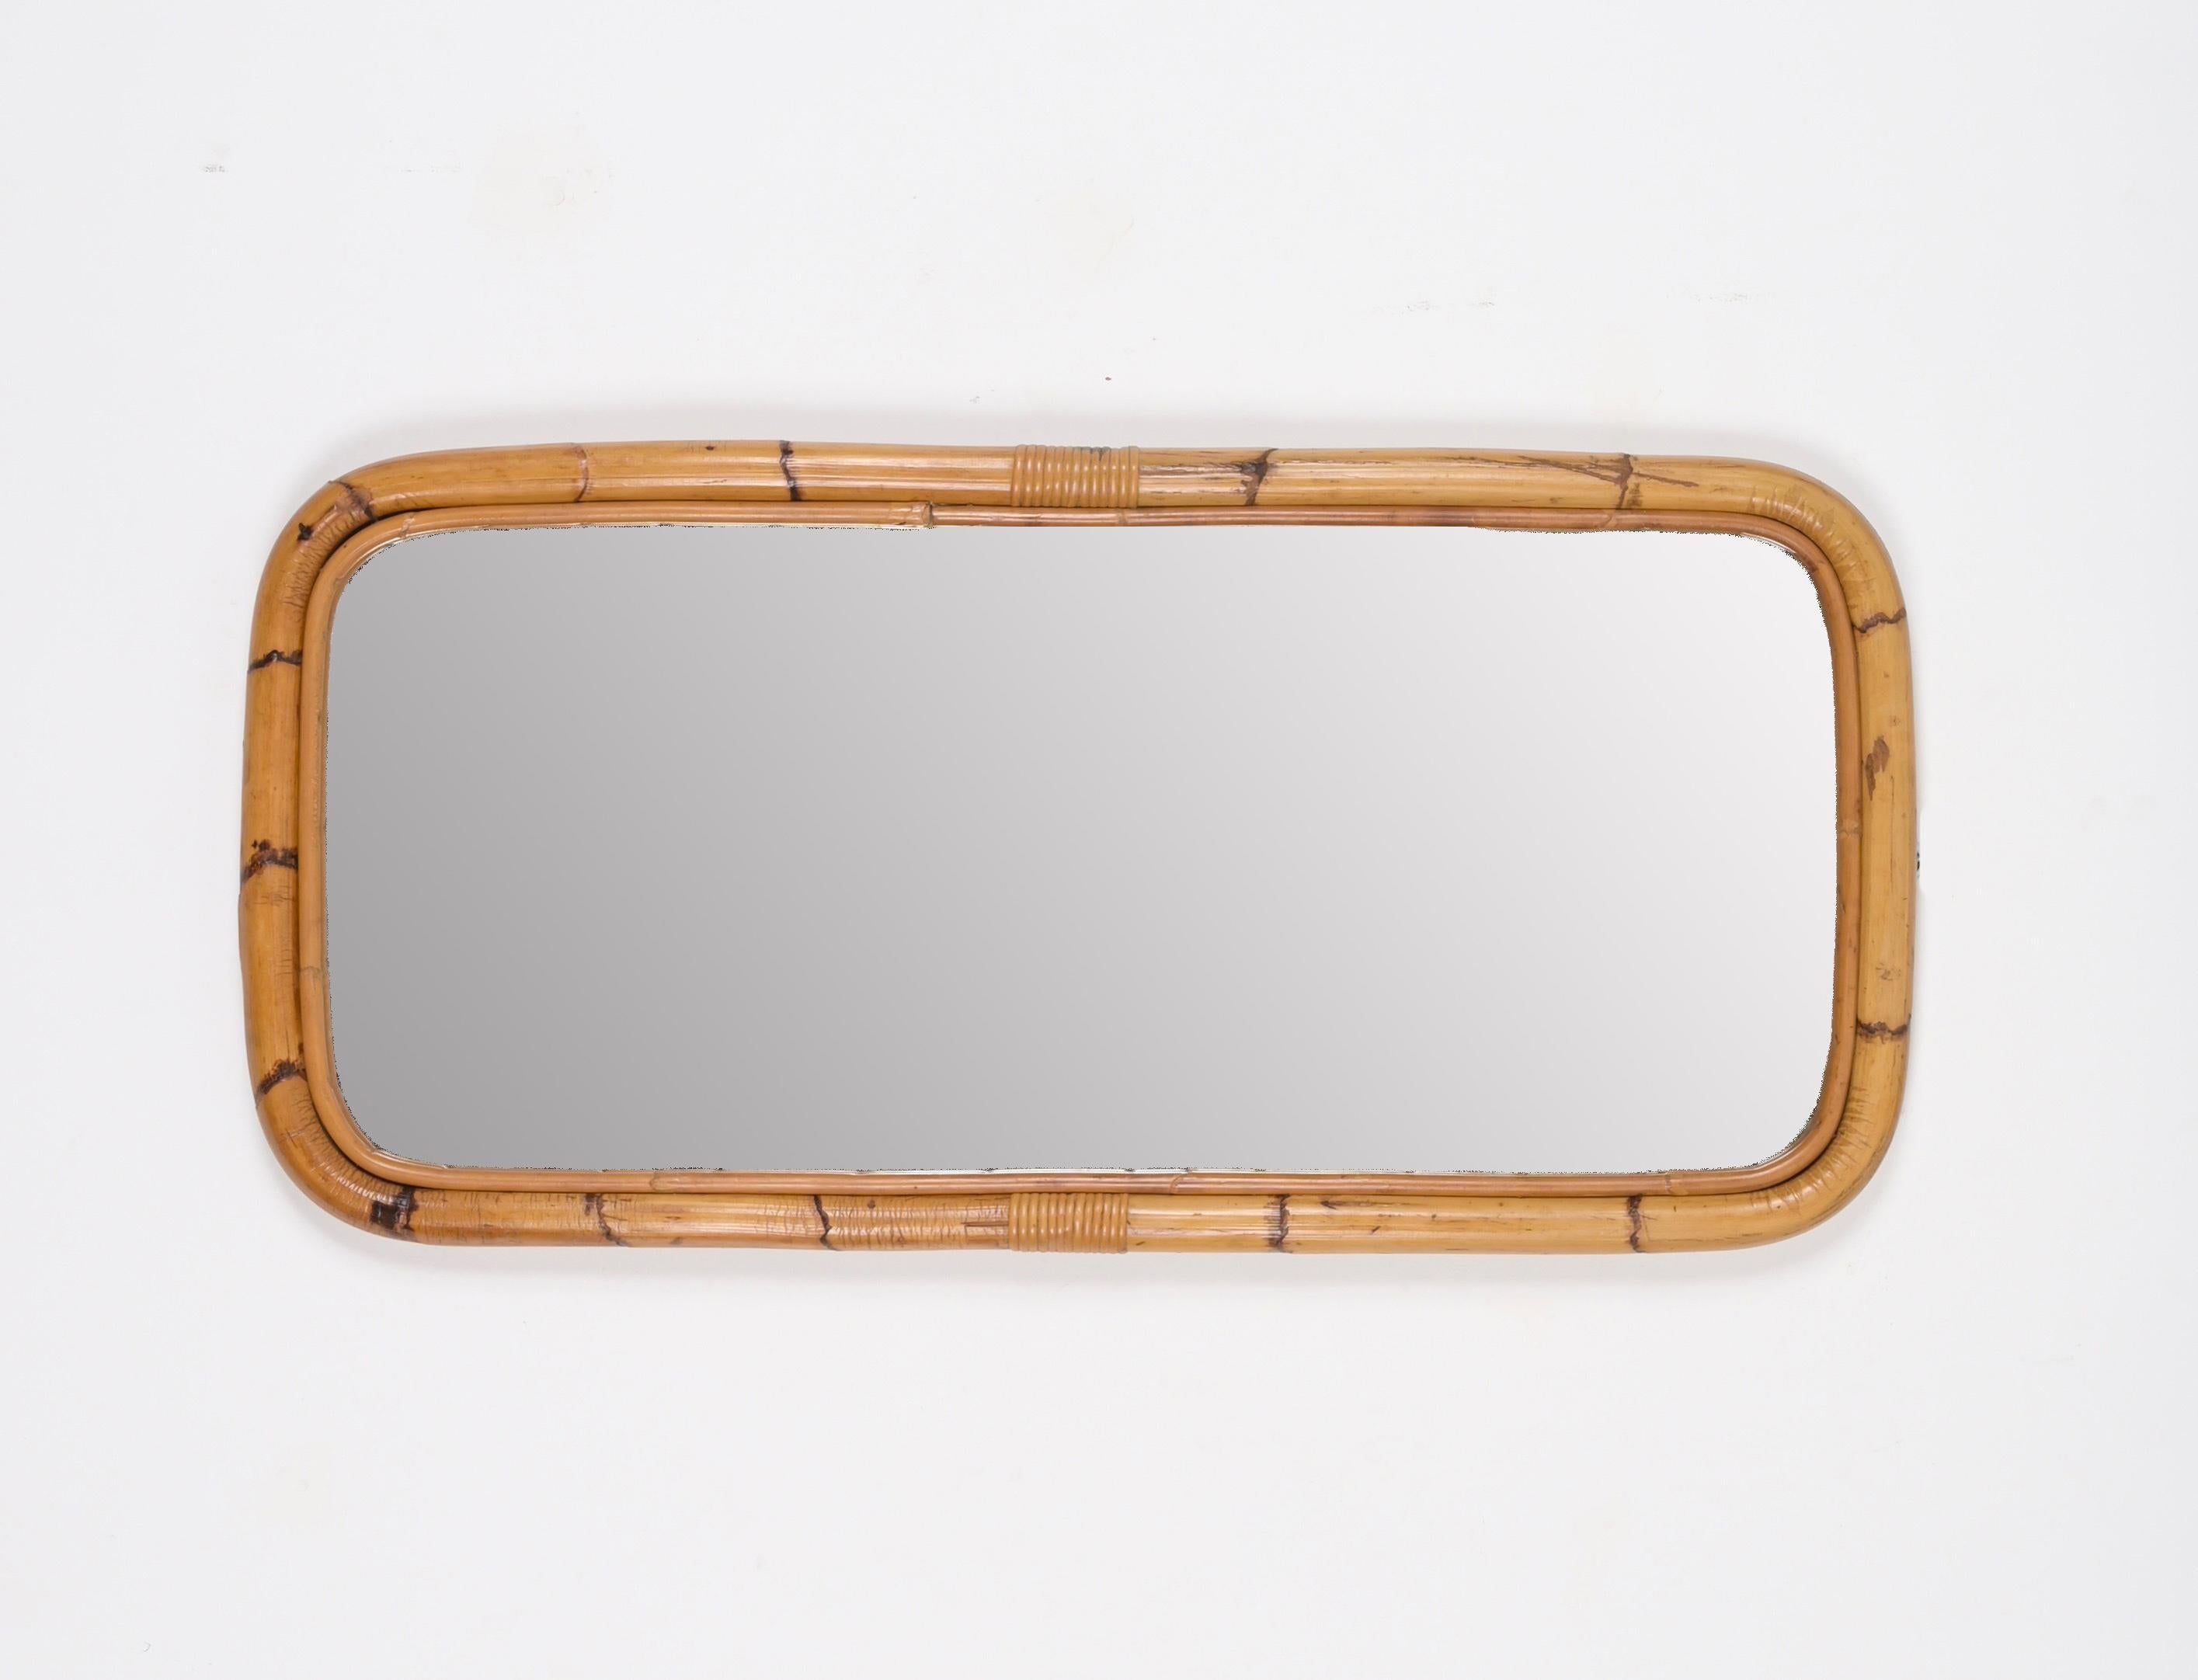 Superbe miroir rectangulaire de style Riviera française du milieu du siècle, en bambou incurvé et rotin tressé. Ce charmant miroir a été produit en Italie dans les années 1970.

Le miroir  a un design unique avec un double cadre en bambou courbé et